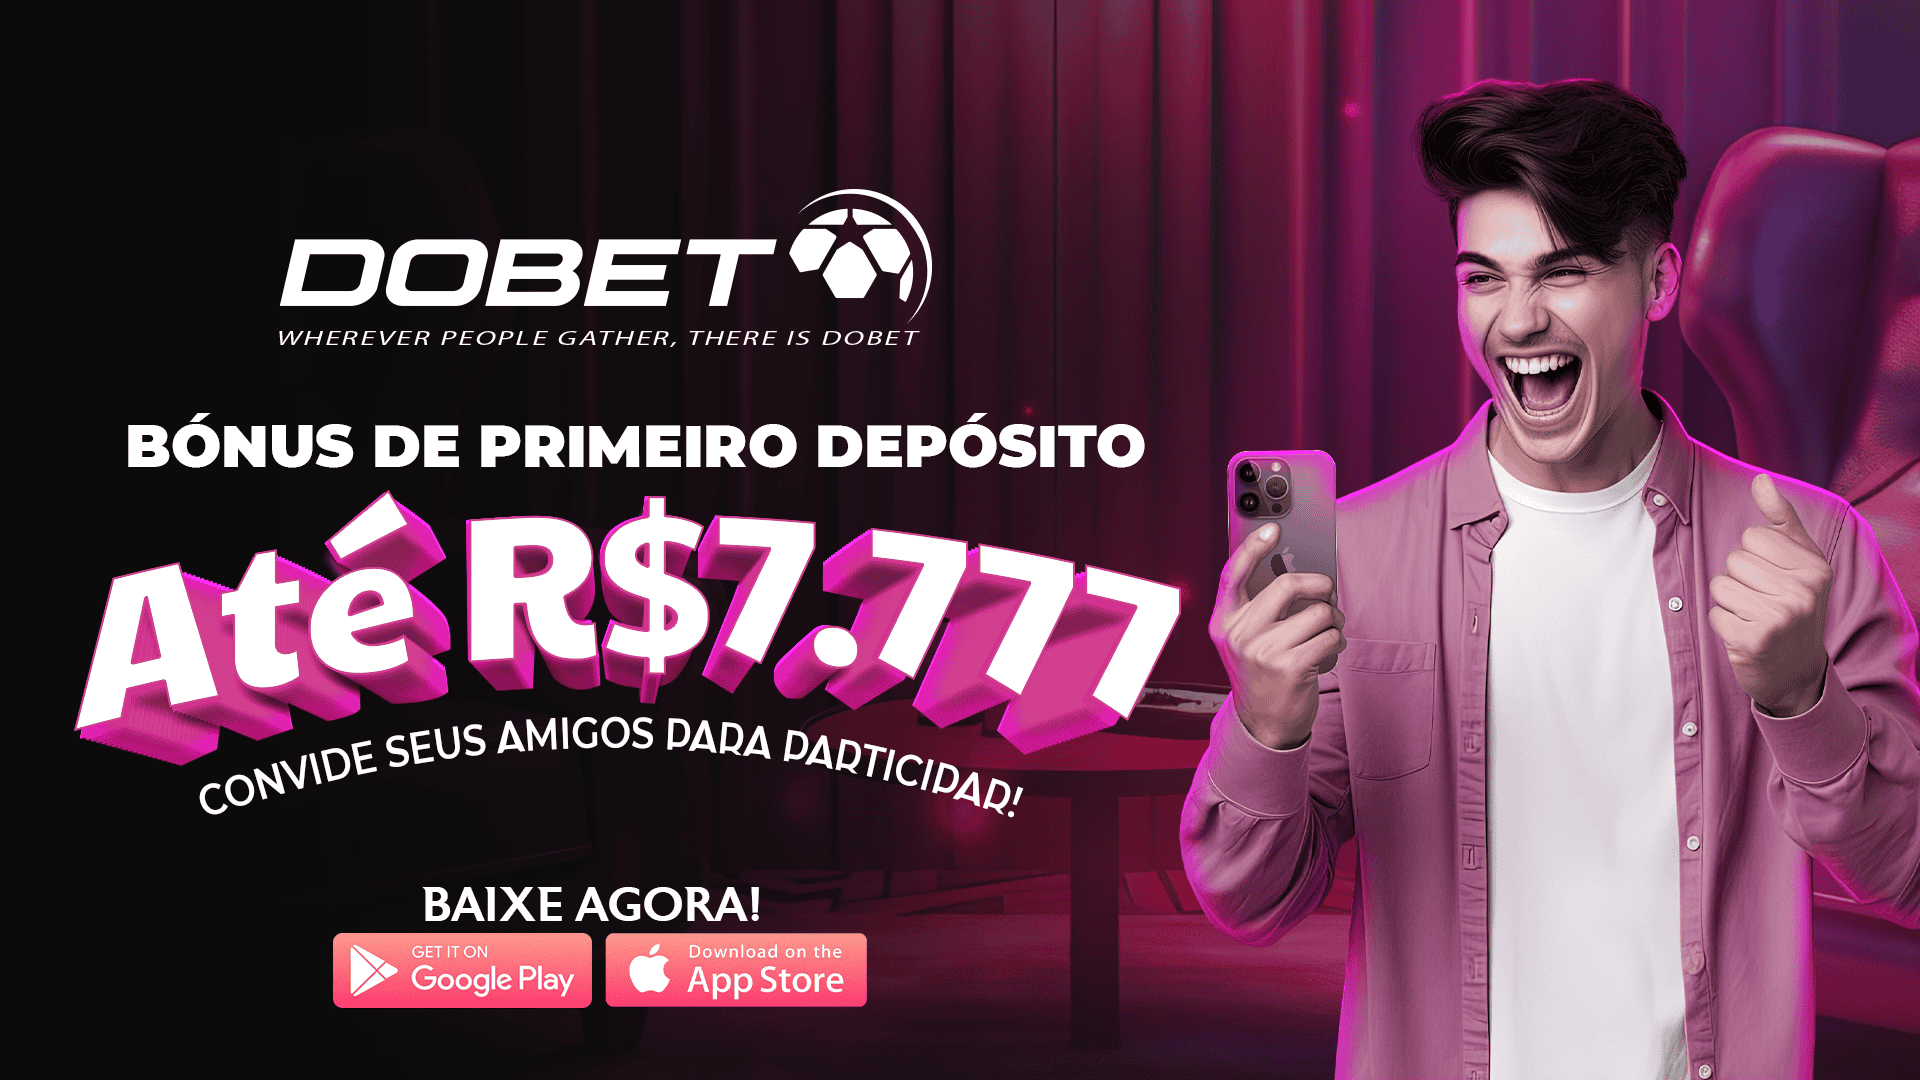 Dobet Promotion R$7.777